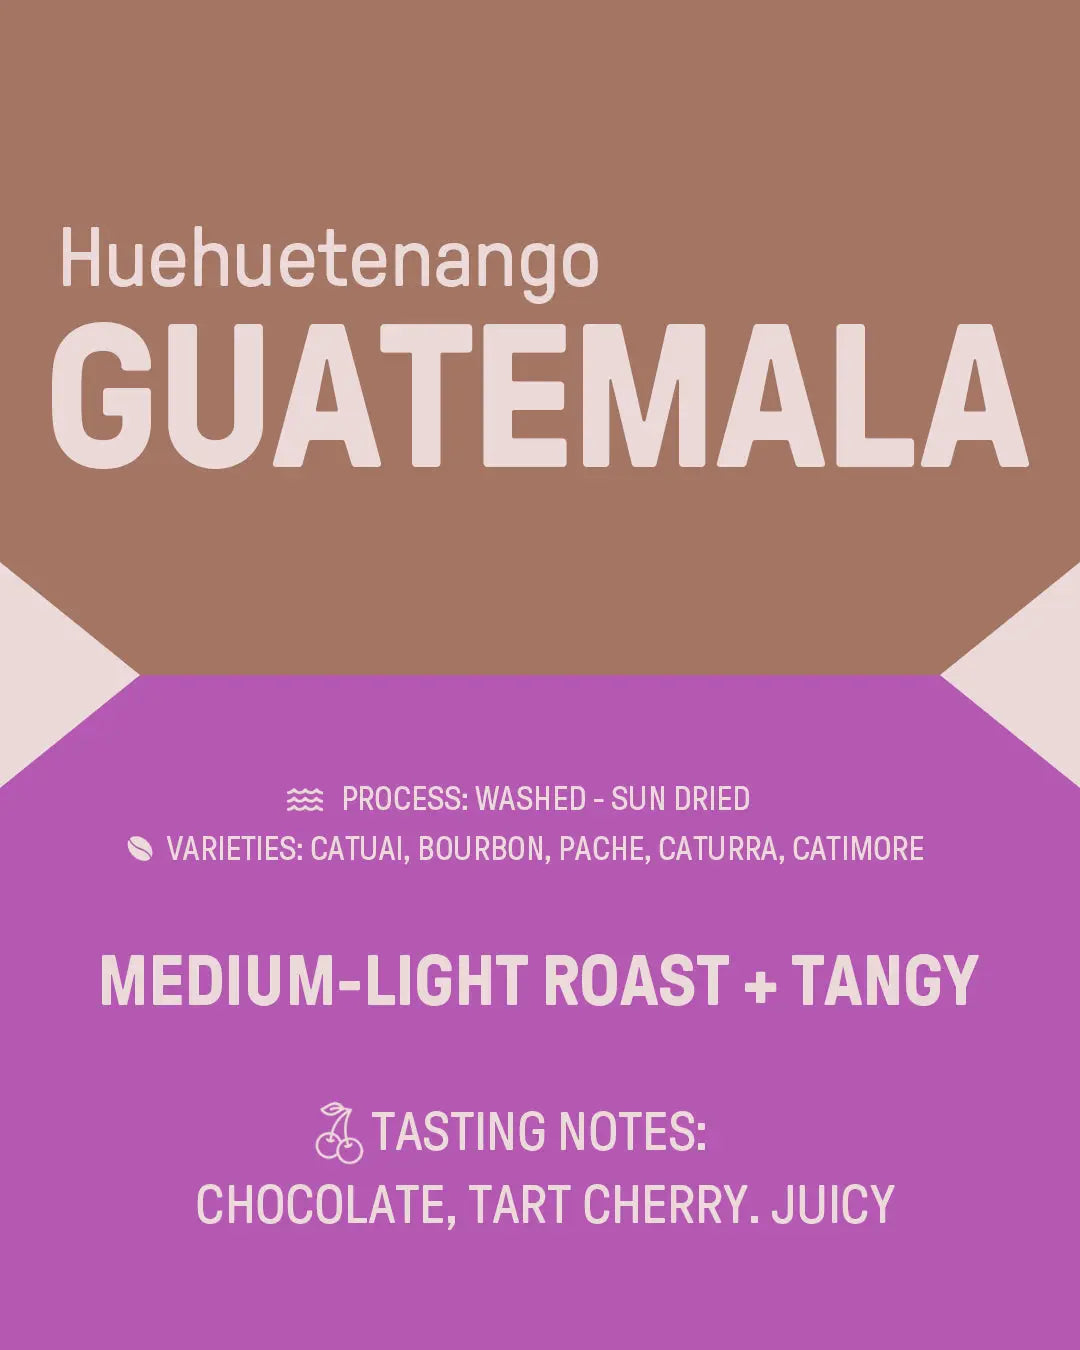 Guatemala "Huehuetenango" James Coffee Co.